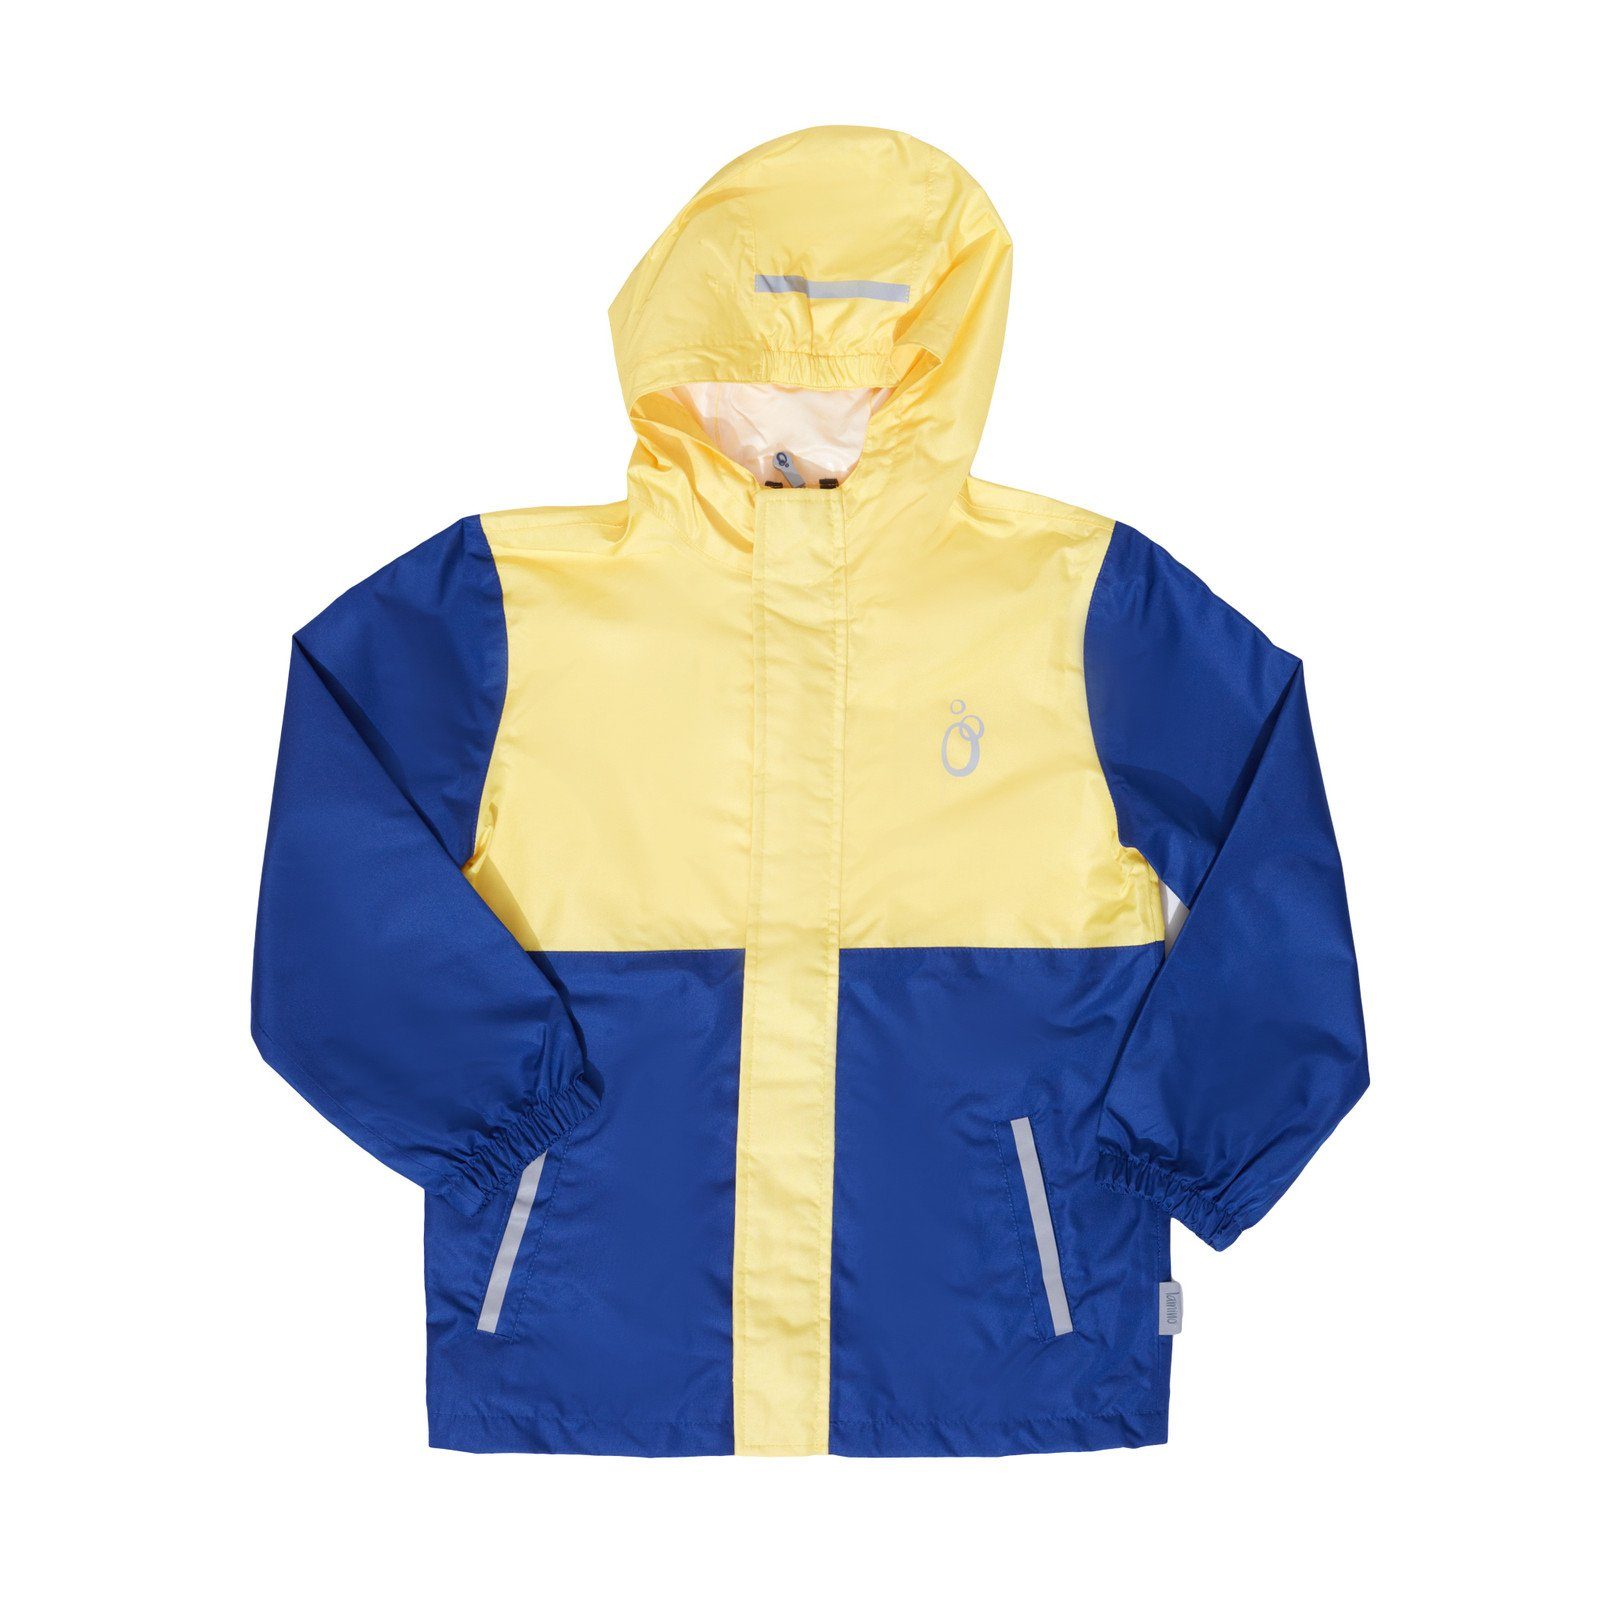 Beschränkt auf direkt verwaltete Filialen lamino Softshelljacke lamino Regen-Jacke bequeme Outdoor-Jacke Kinder Freizeit-Jacke Gelb/Blau